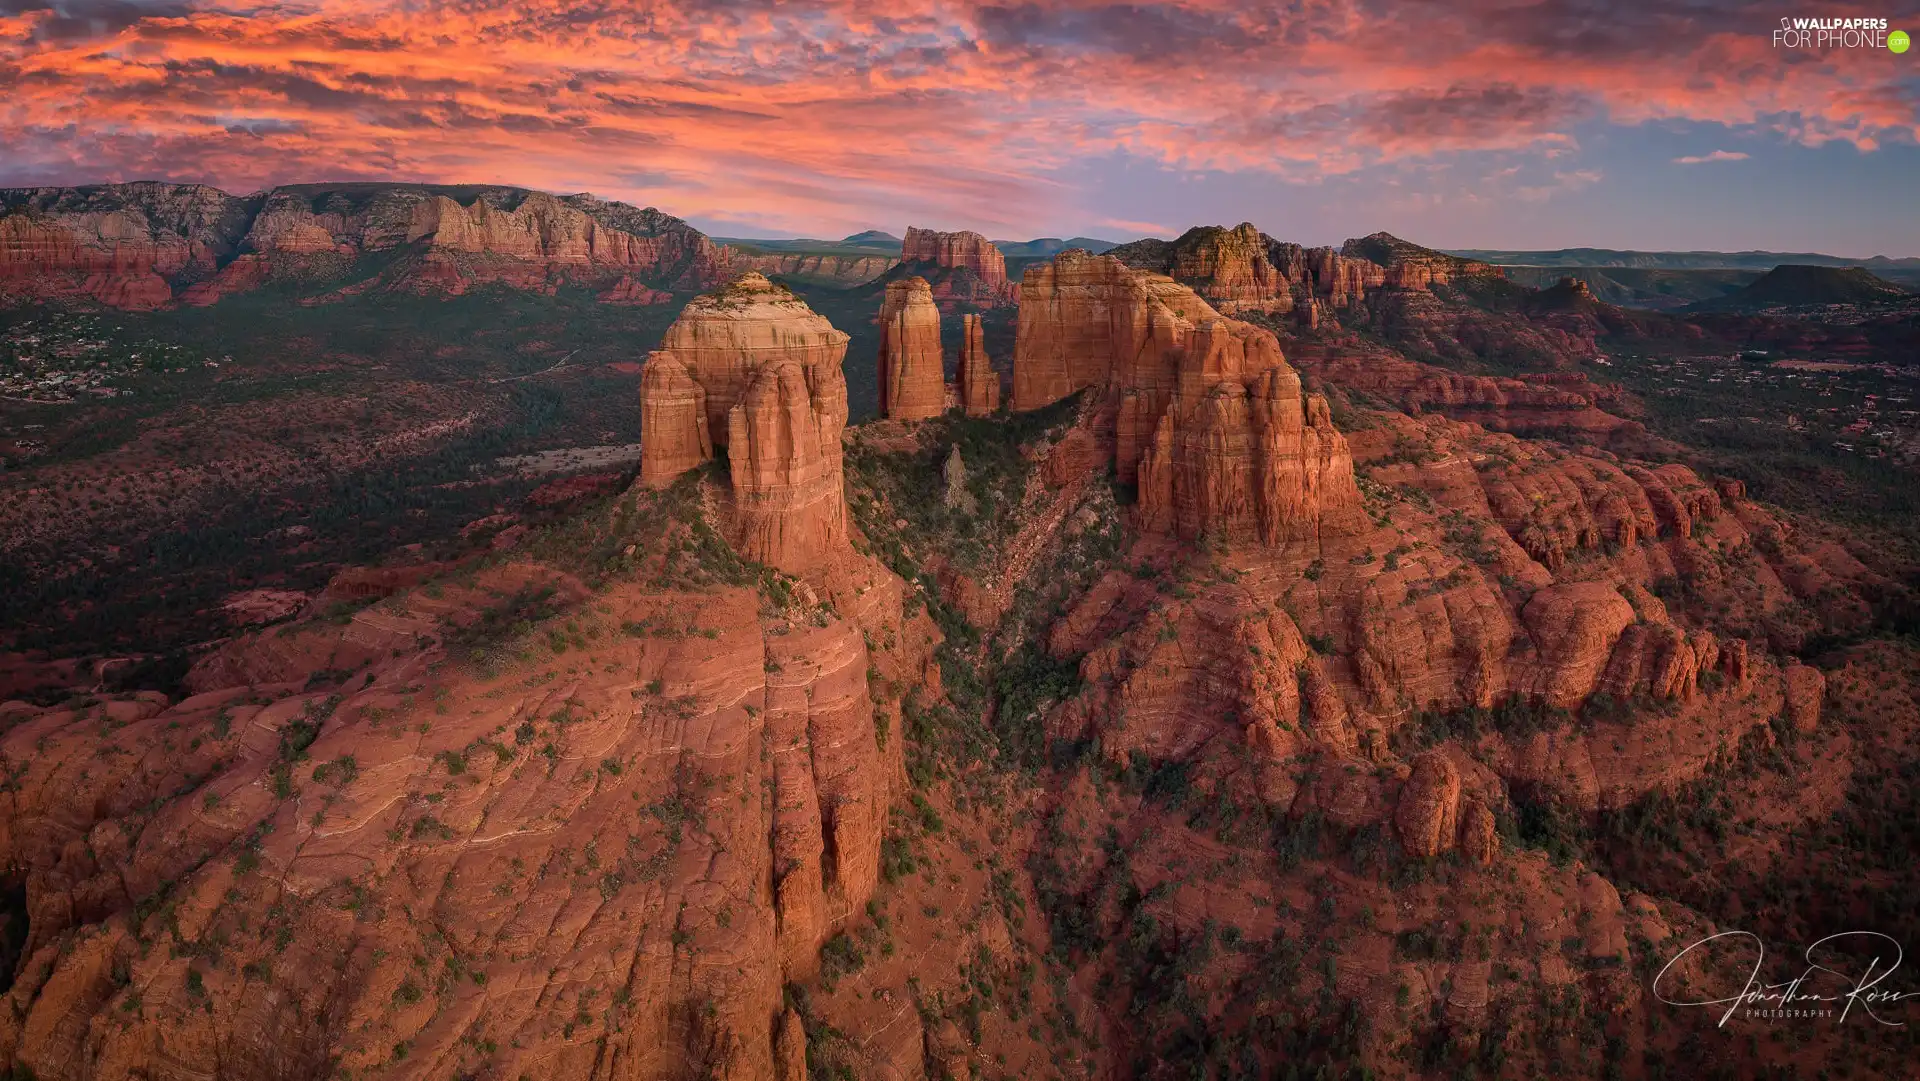 VEGETATION, clouds, The United States, Great Sunsets, Arizona, rocks, canyon, Sedona